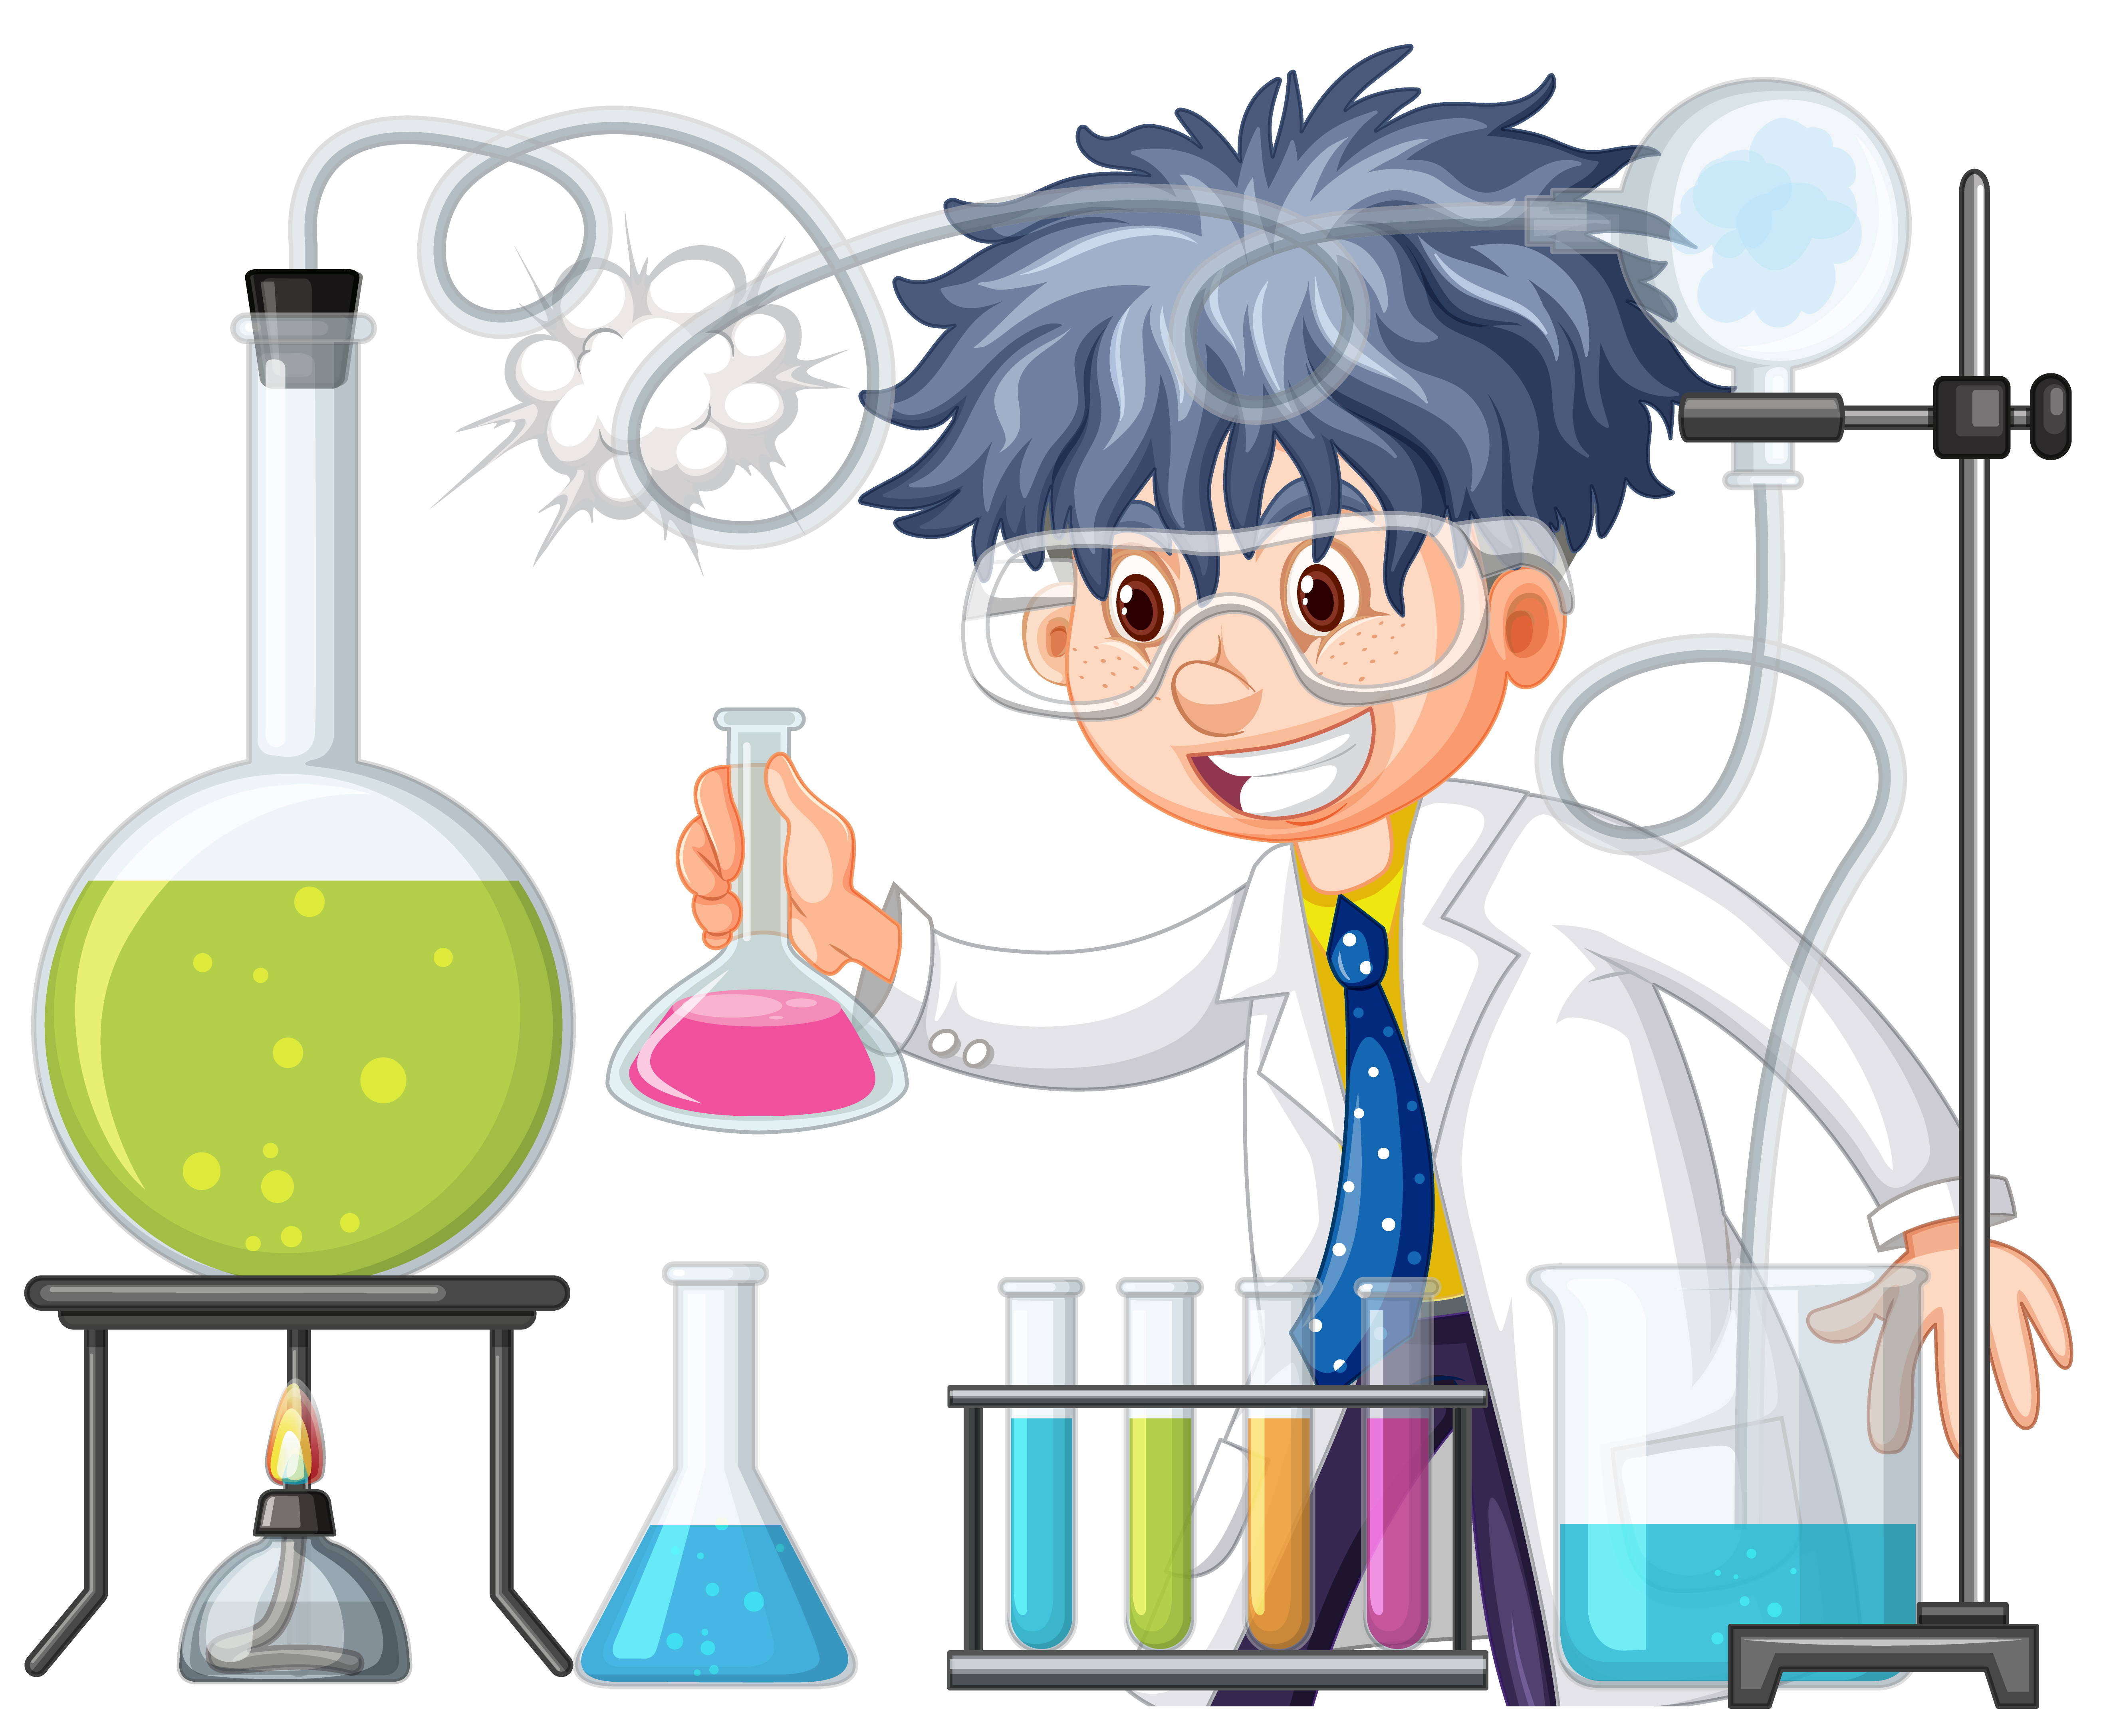 Школа опытов и экспериментов. Химическая лаборатория для детей. Химические опыты в лаборатории. Химия опыты для детей. Наука для детей.